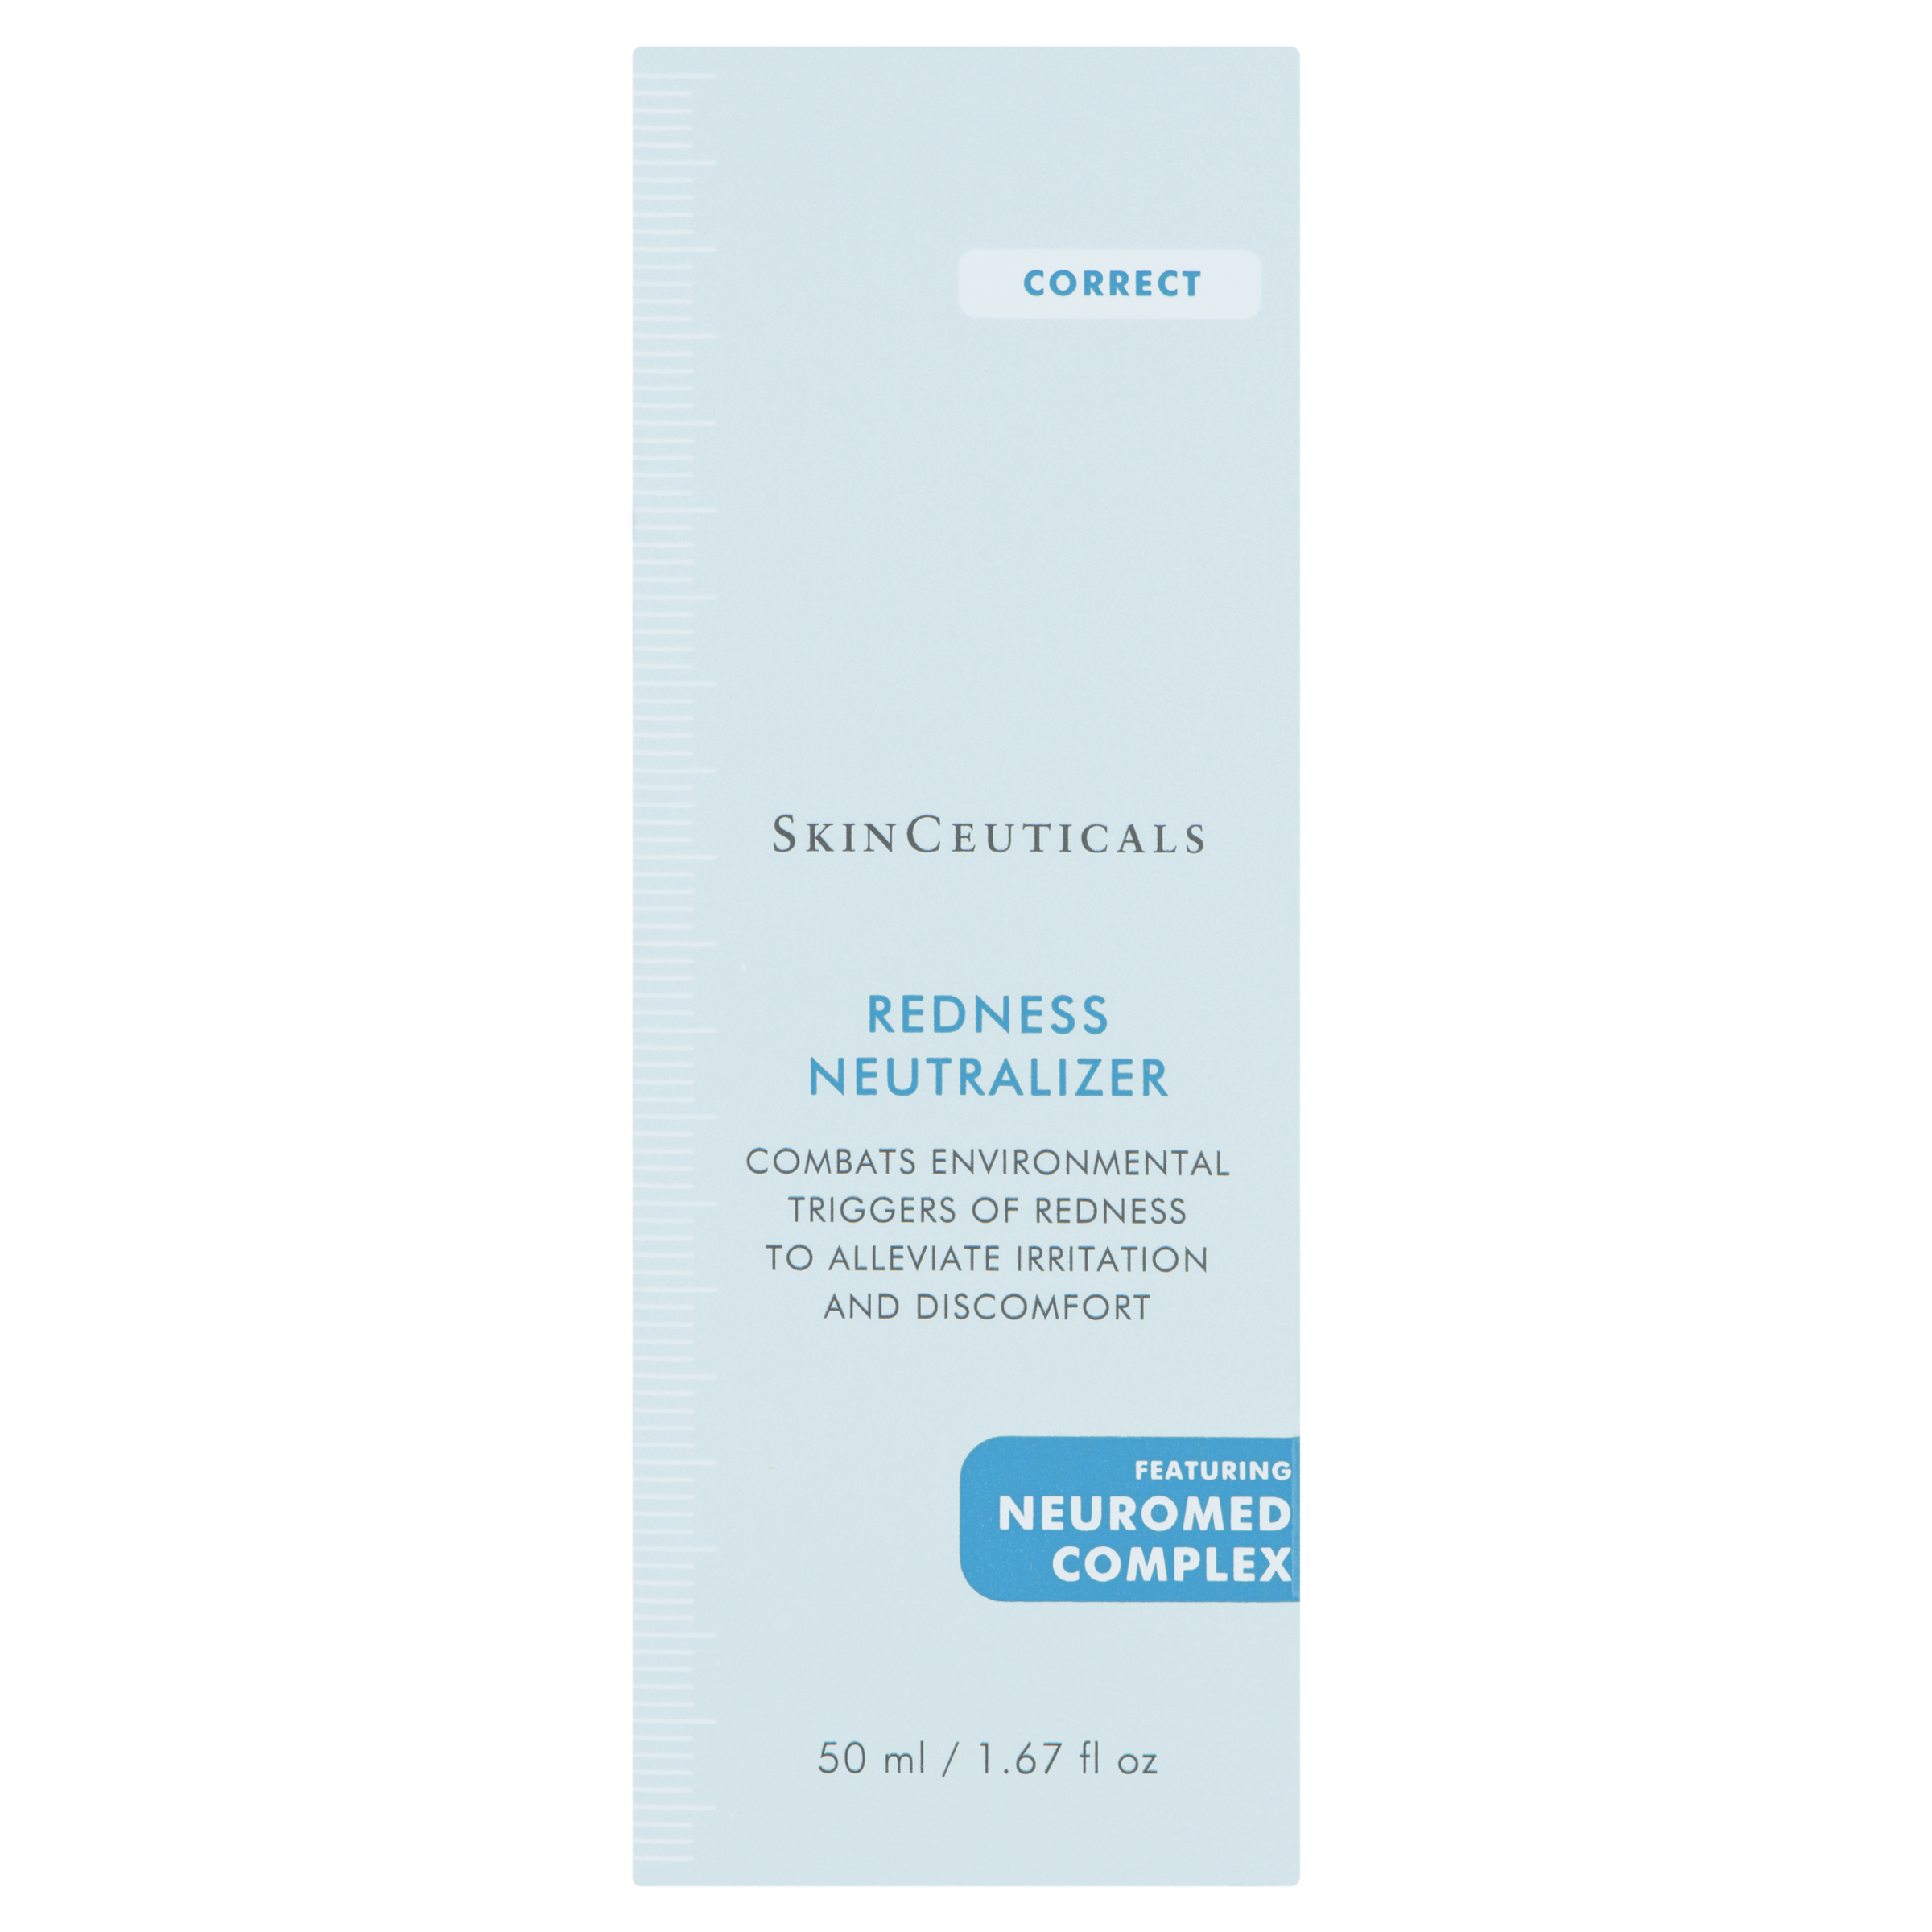 SkinCeuticals | Redness Neutralizer (50mls)